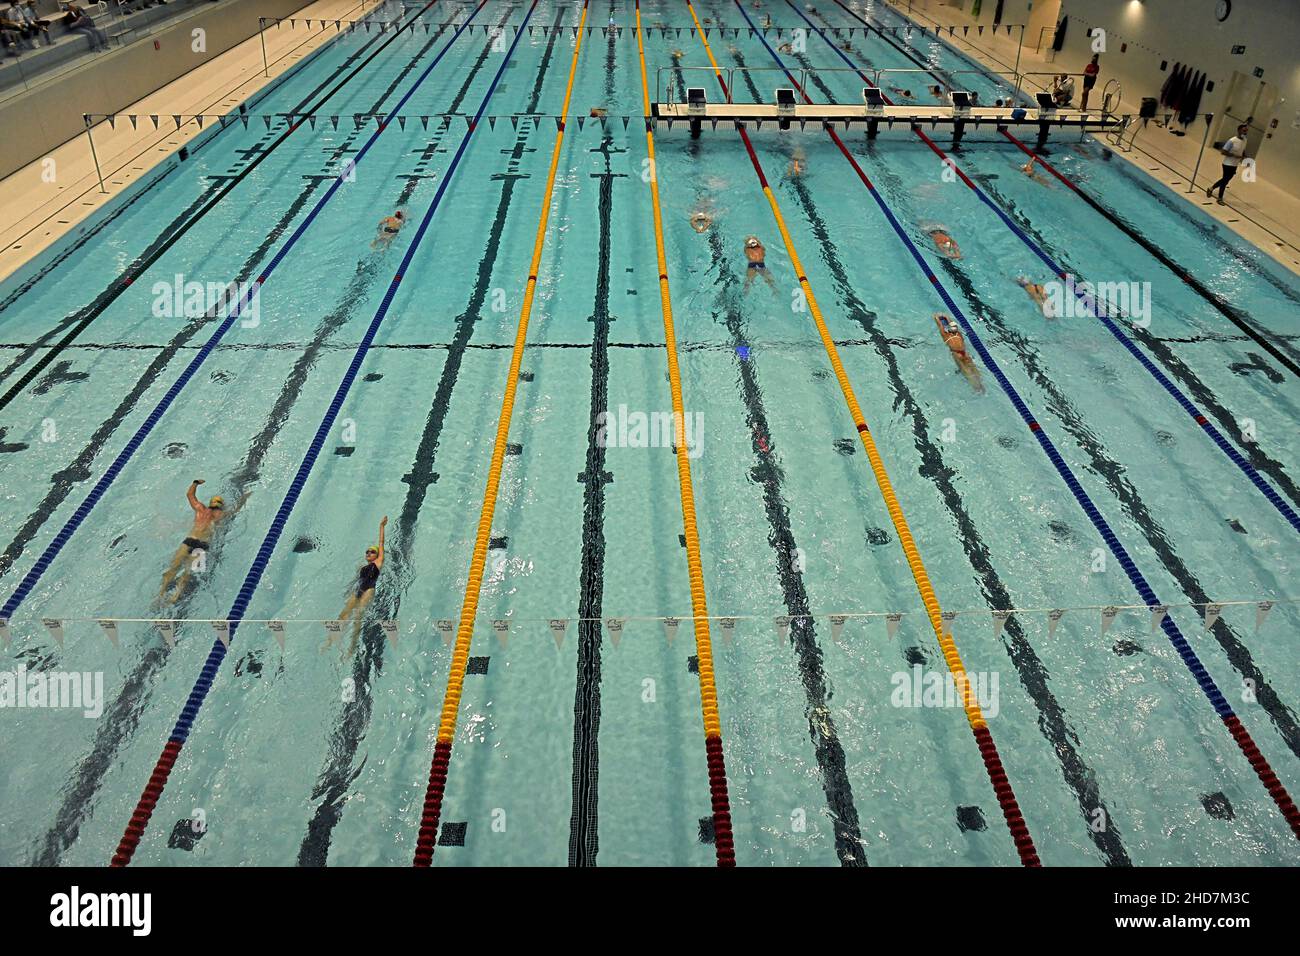 La nueva piscina cubierta olympique de la Universidad Bocconi, en Milán. Foto de stock